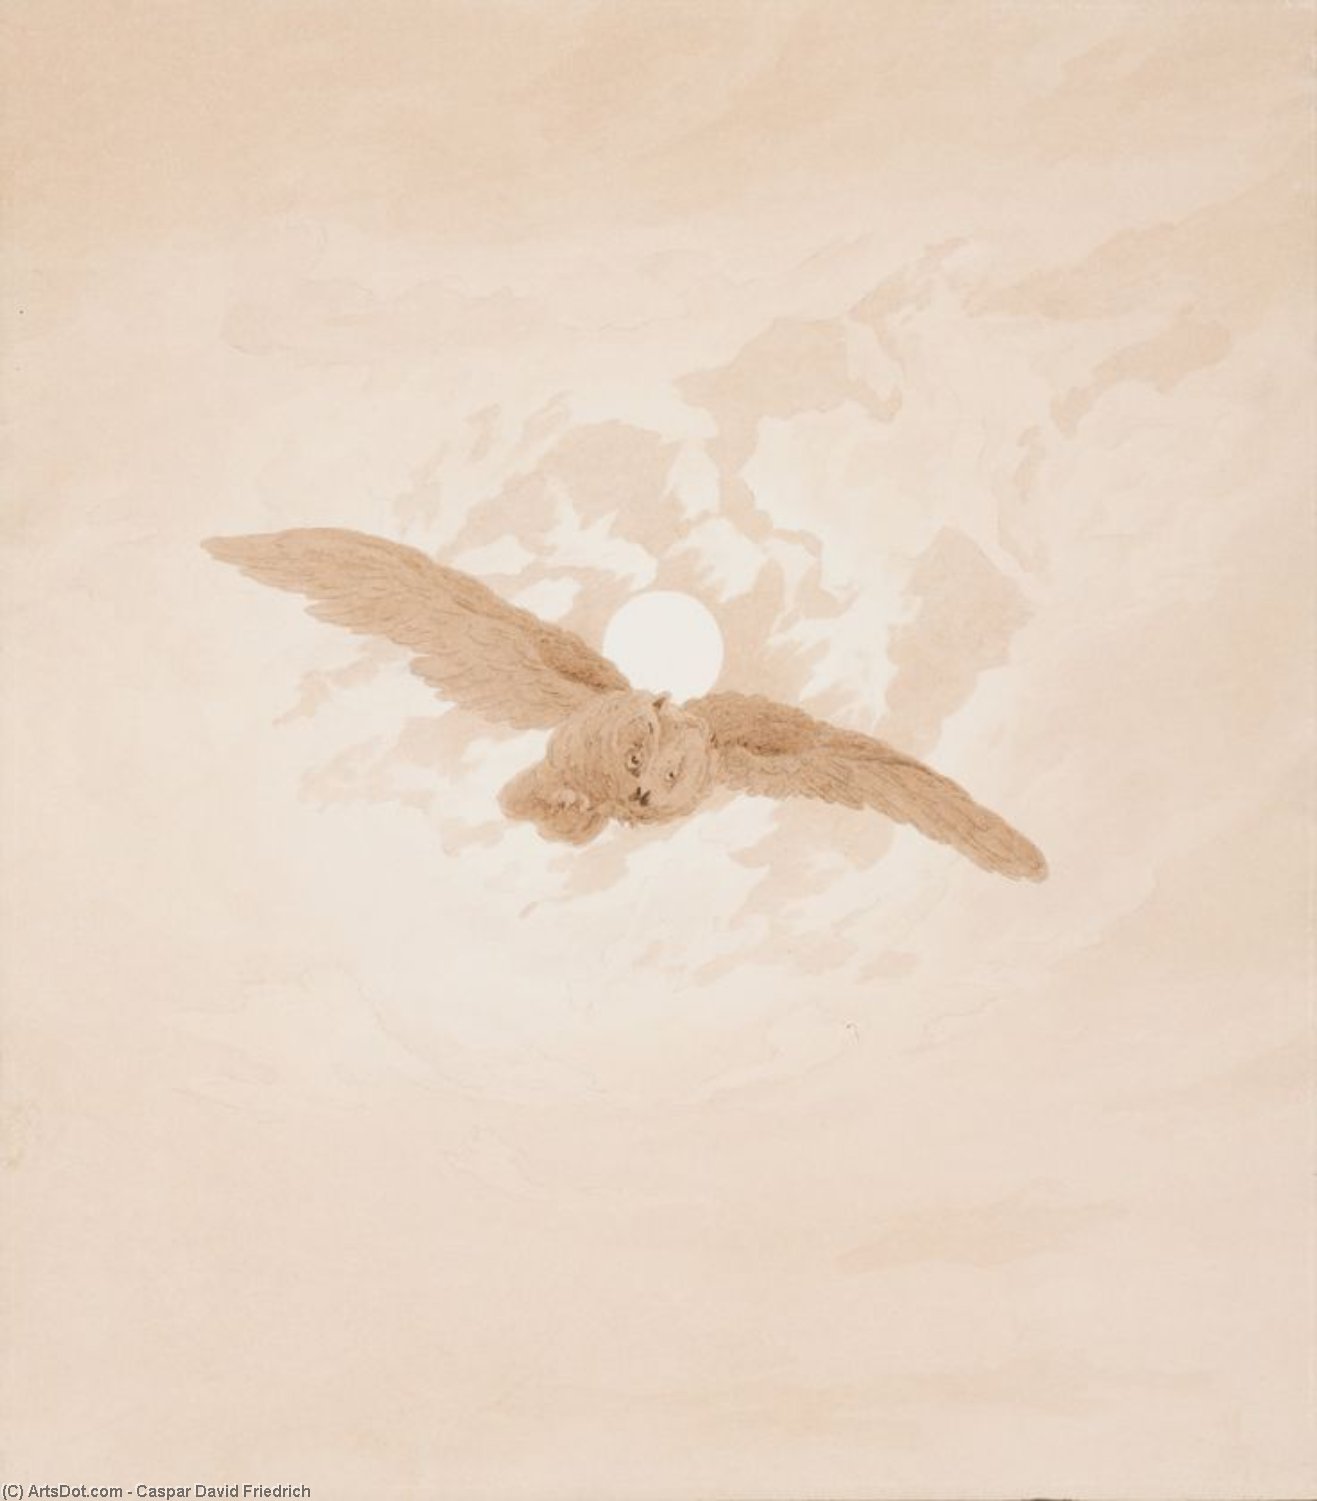 Wikoo.org - موسوعة الفنون الجميلة - اللوحة، العمل الفني Caspar David Friedrich - Owl Flying against a Moonlit Sky